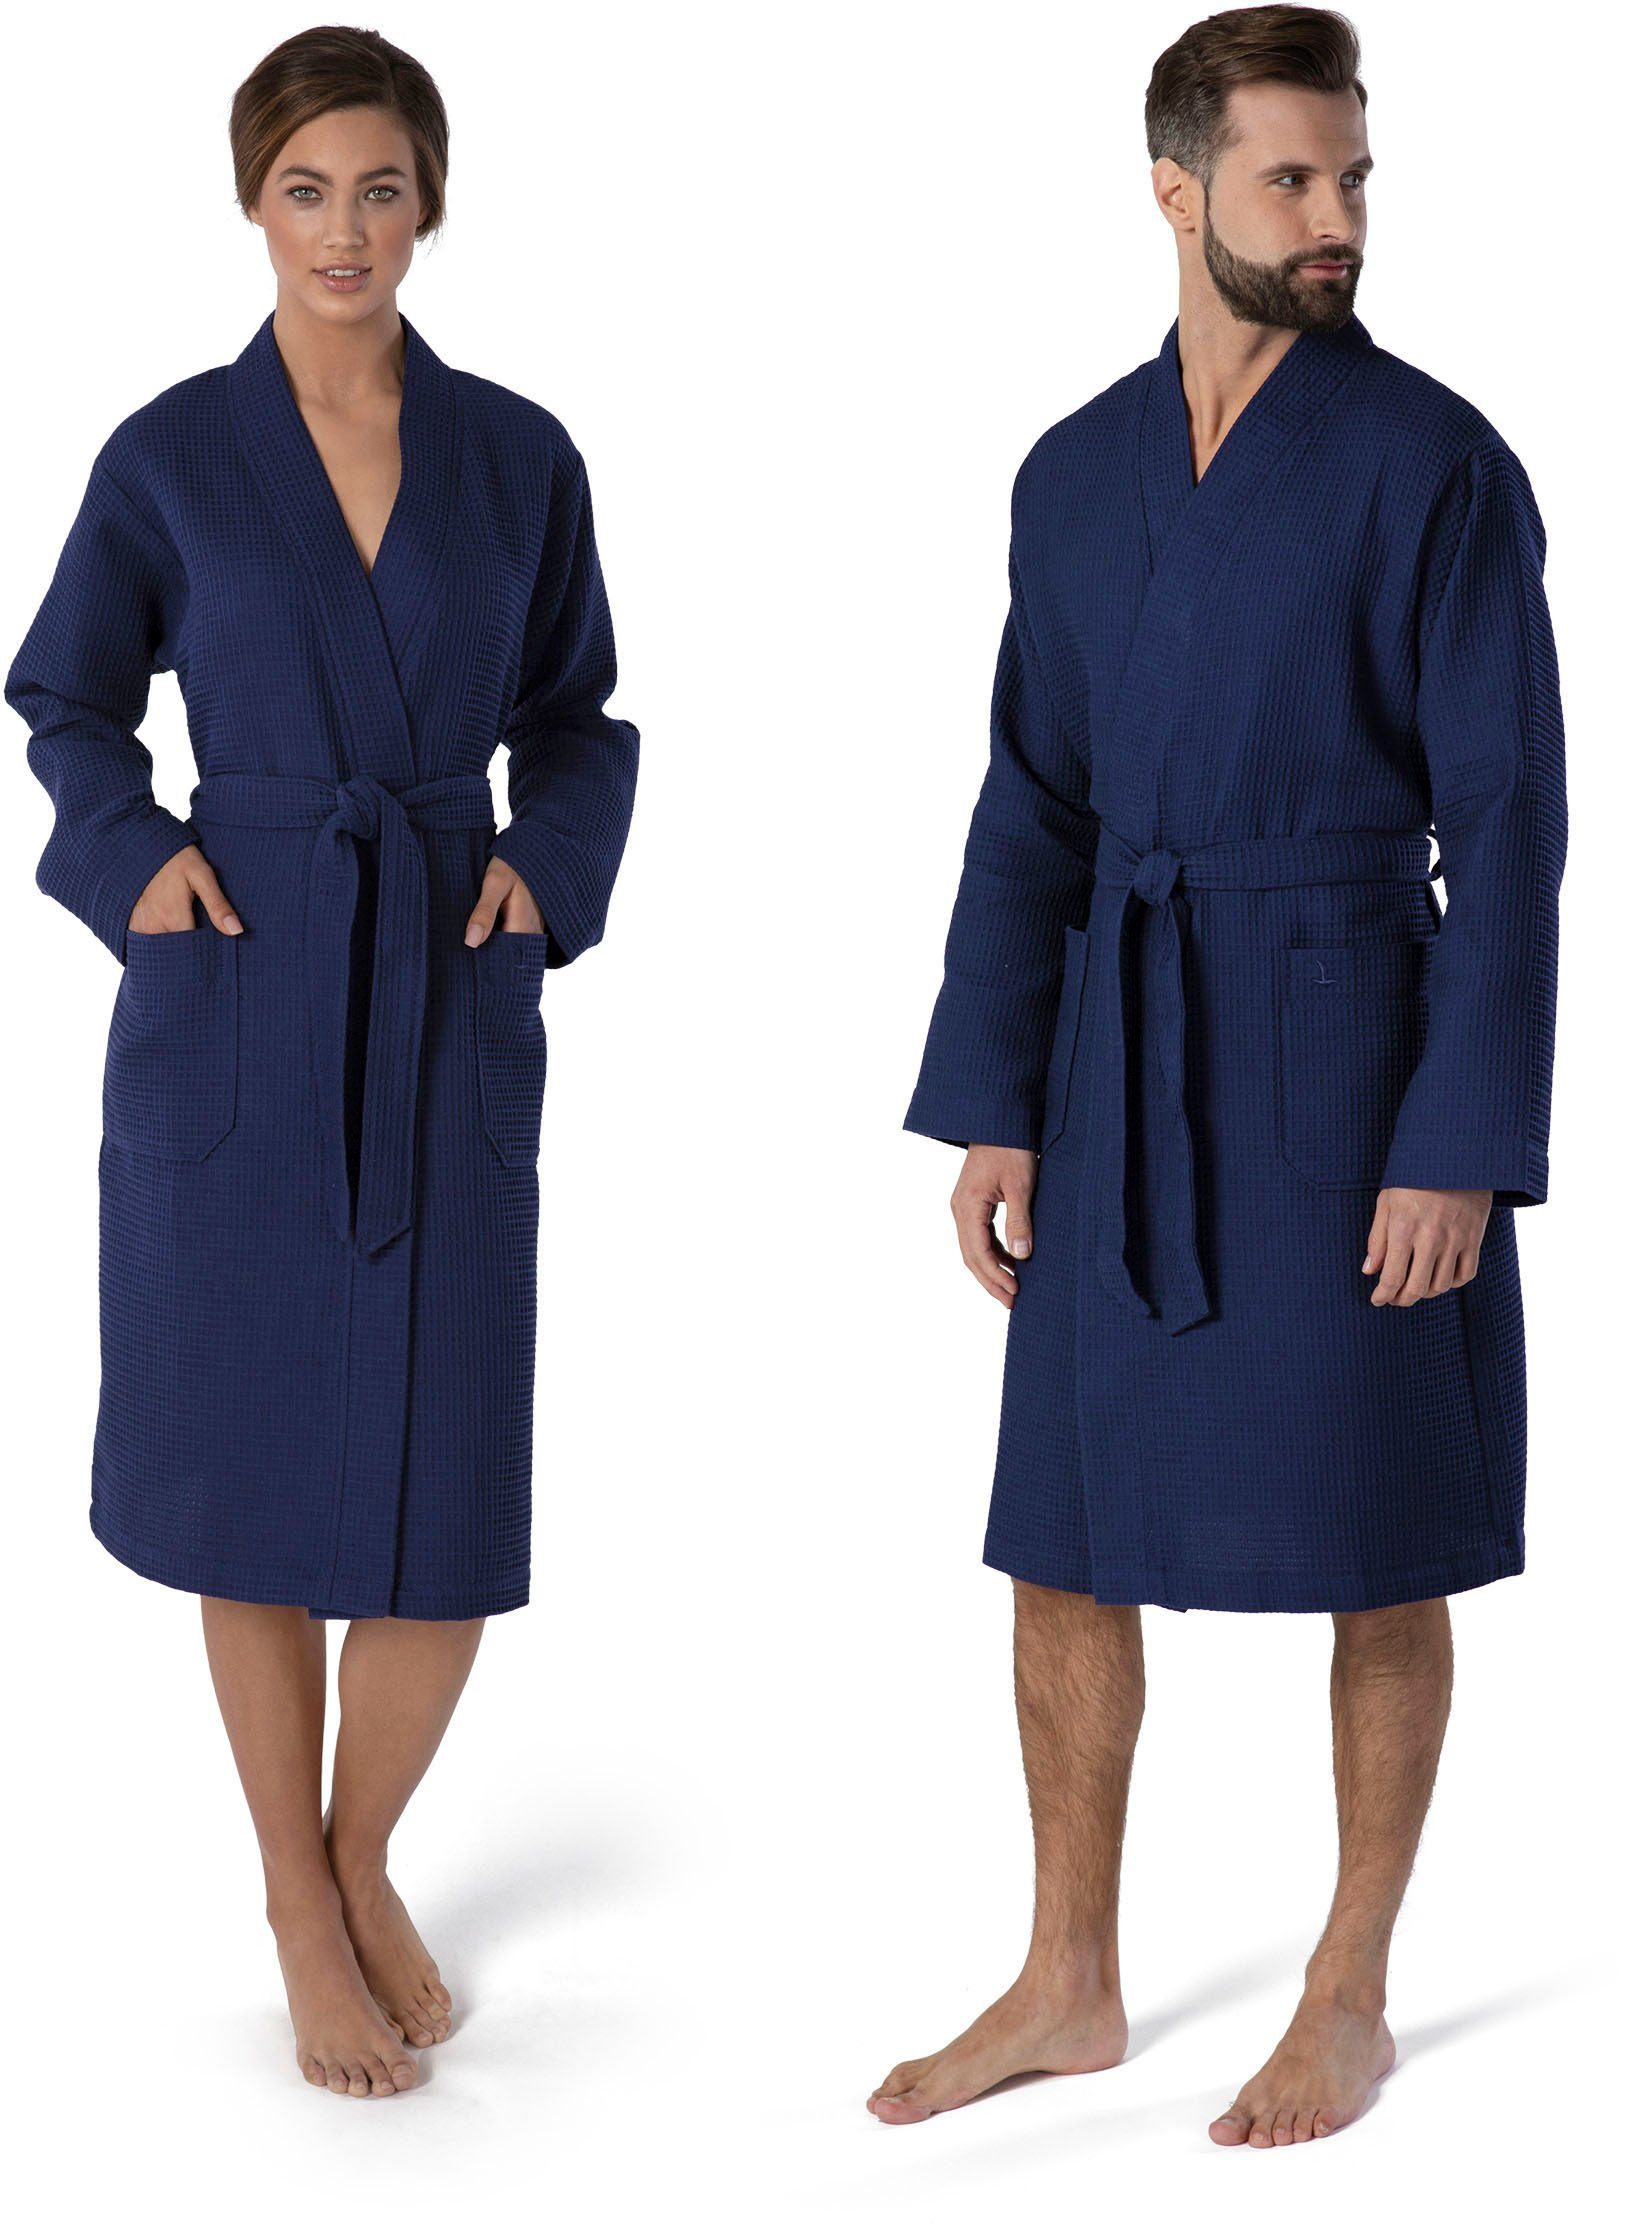 Baumwolle Homewear, Piqué, hergestellt Möve 100% Kimono-Kragen, Gürtel, Piquée-Oberfläche, Kurzform, Kimono Aus